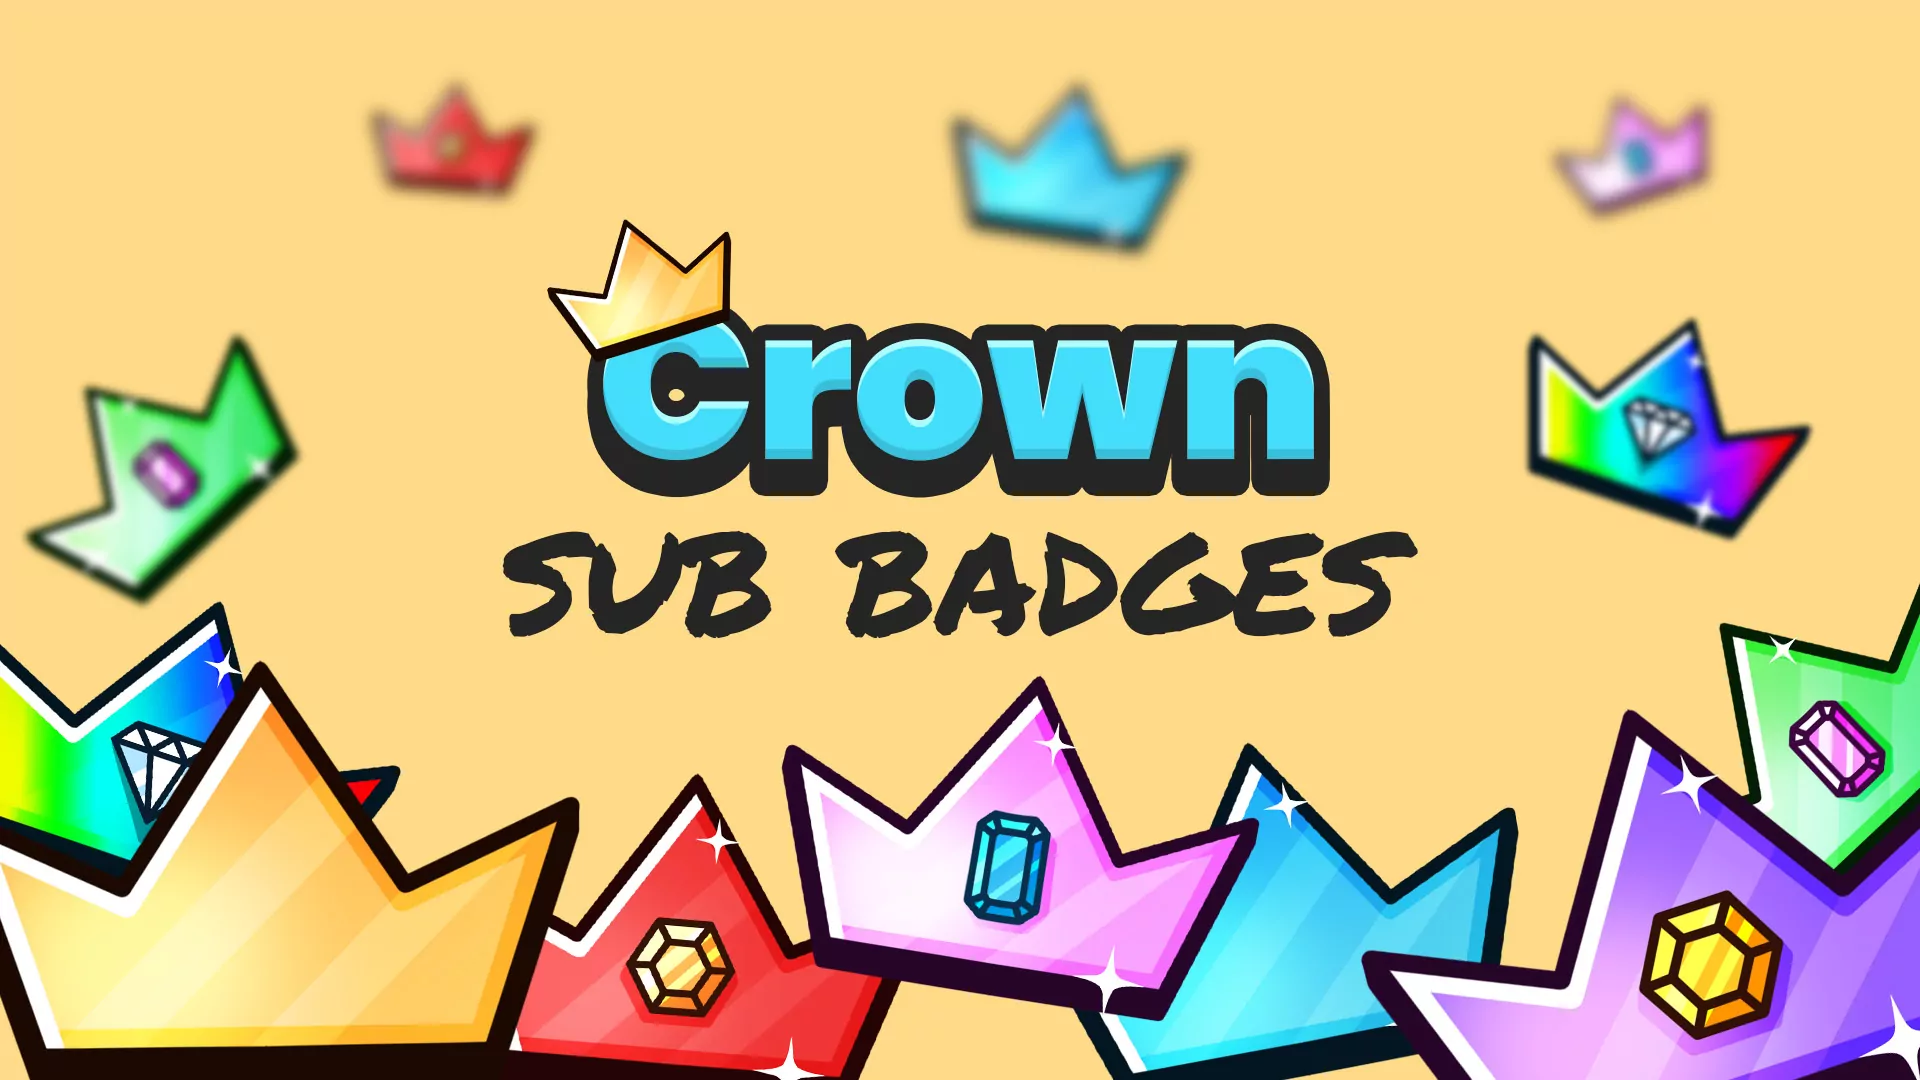 Sous-badges de la couronne pour Twitch et Youtube